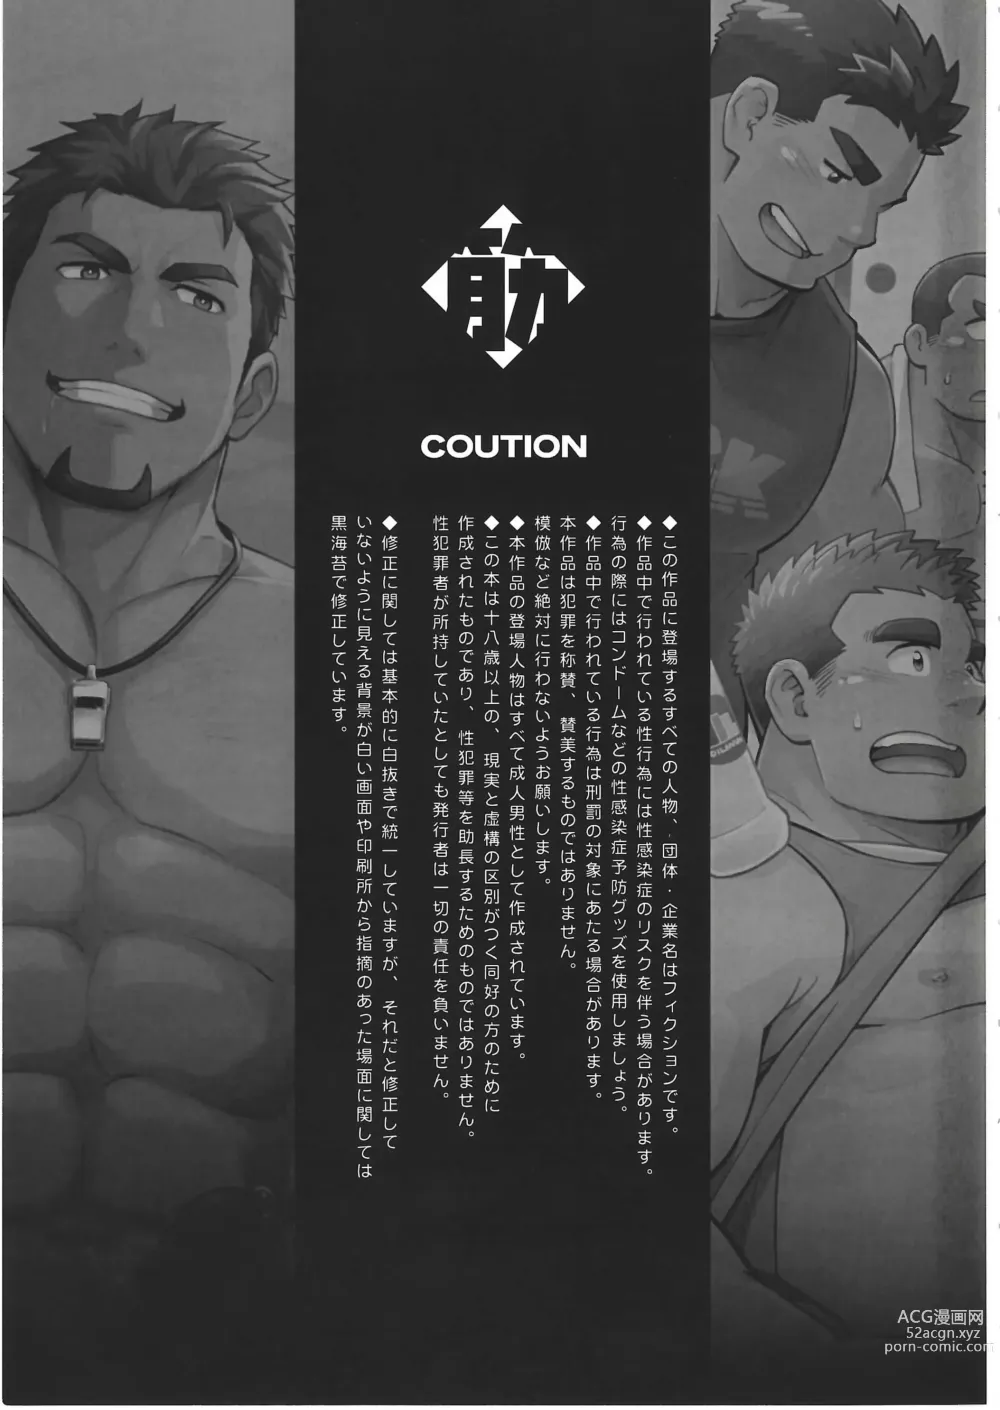 Page 6 of manga CHOGOKIN-003